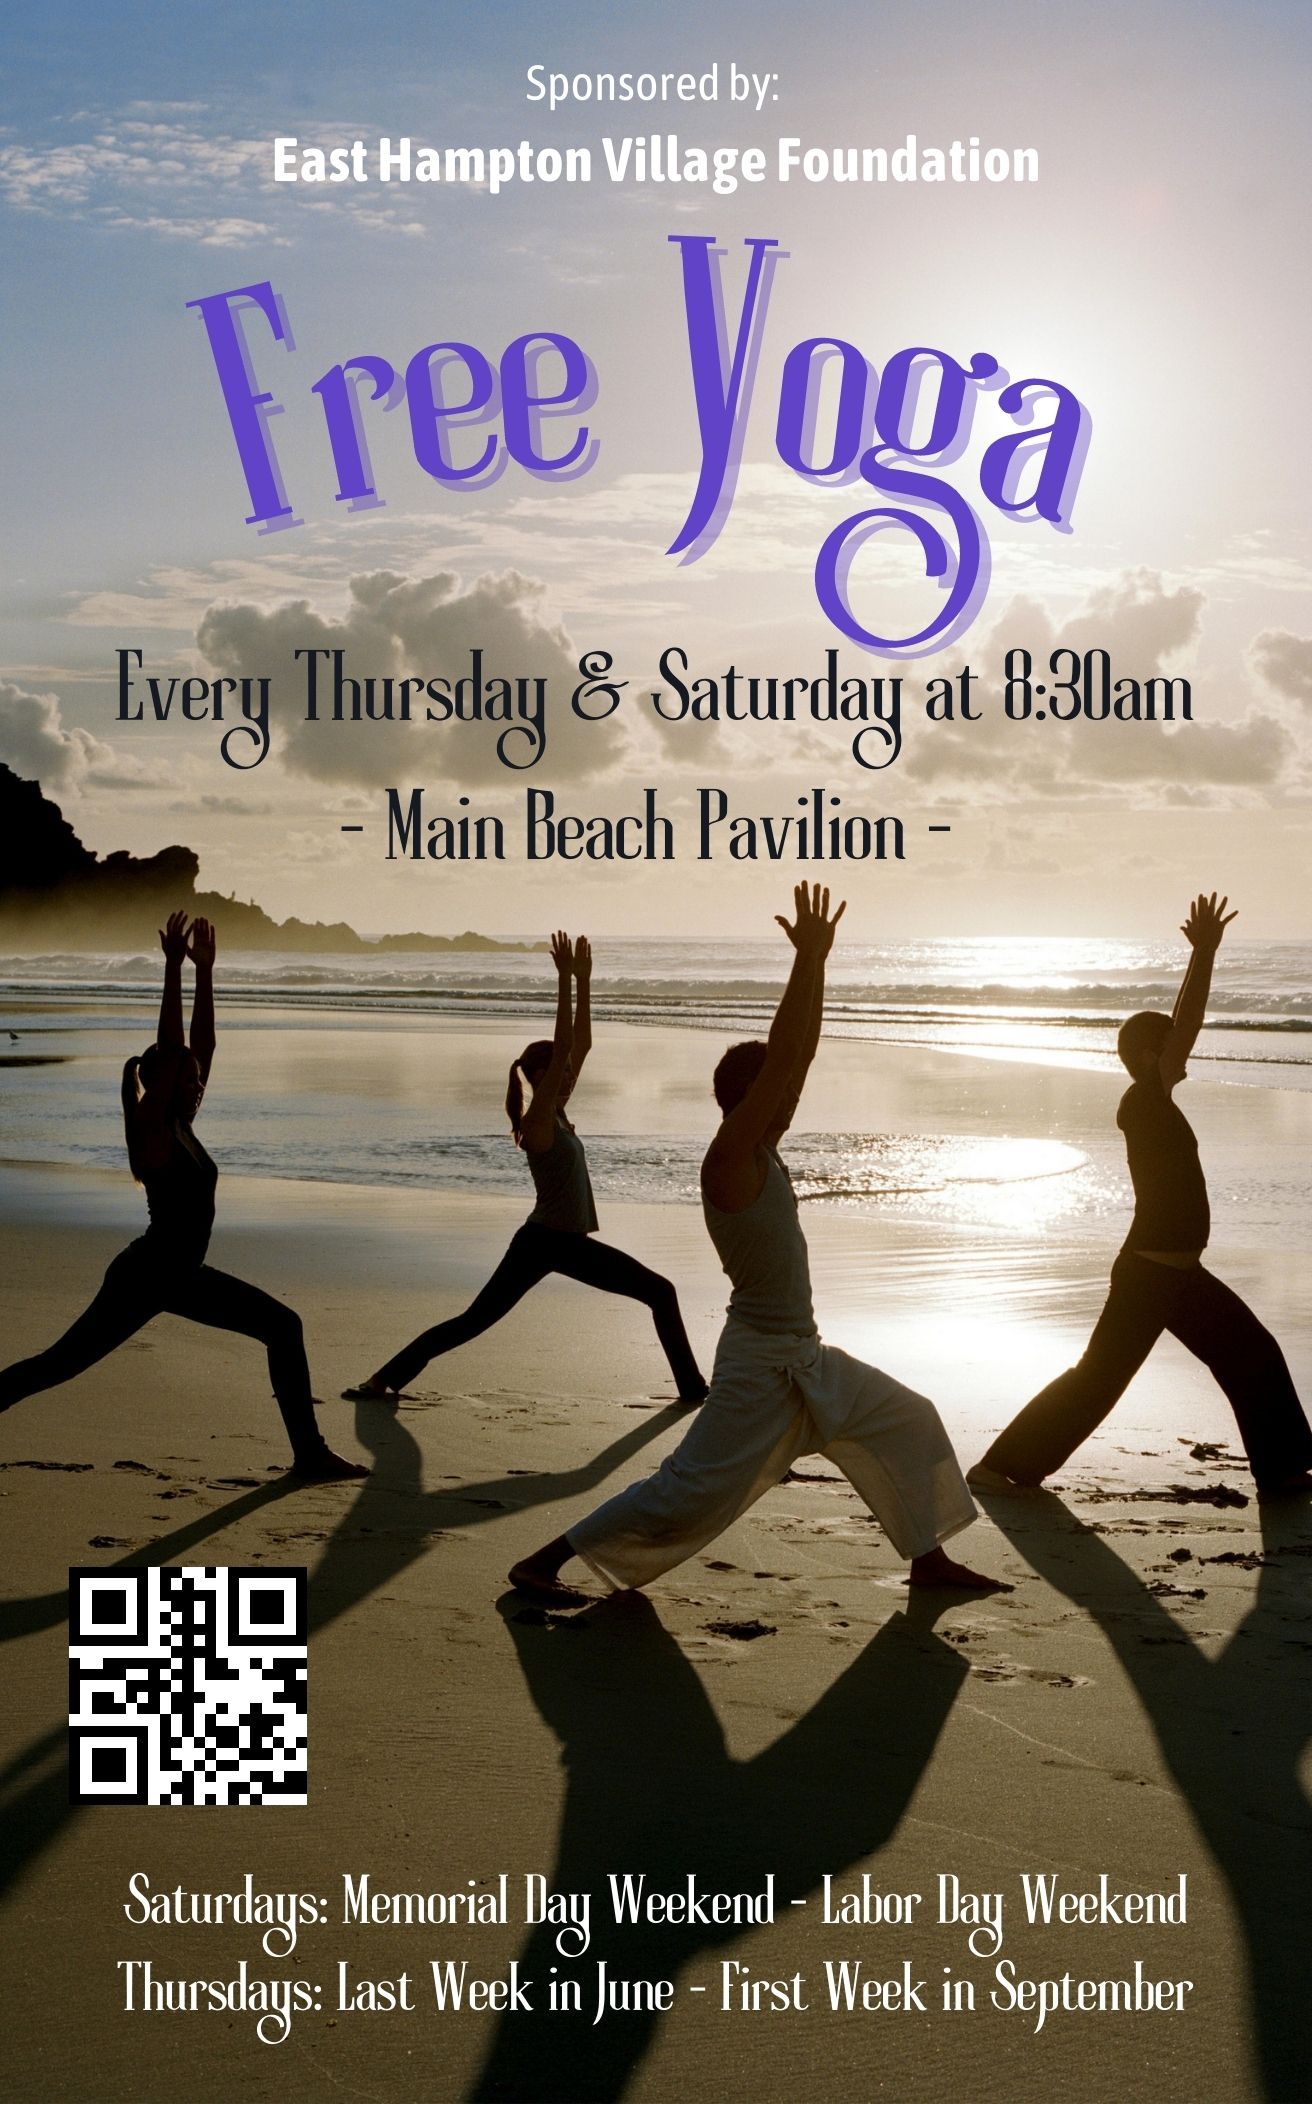 Free Yoga at Main Beach Pavilion